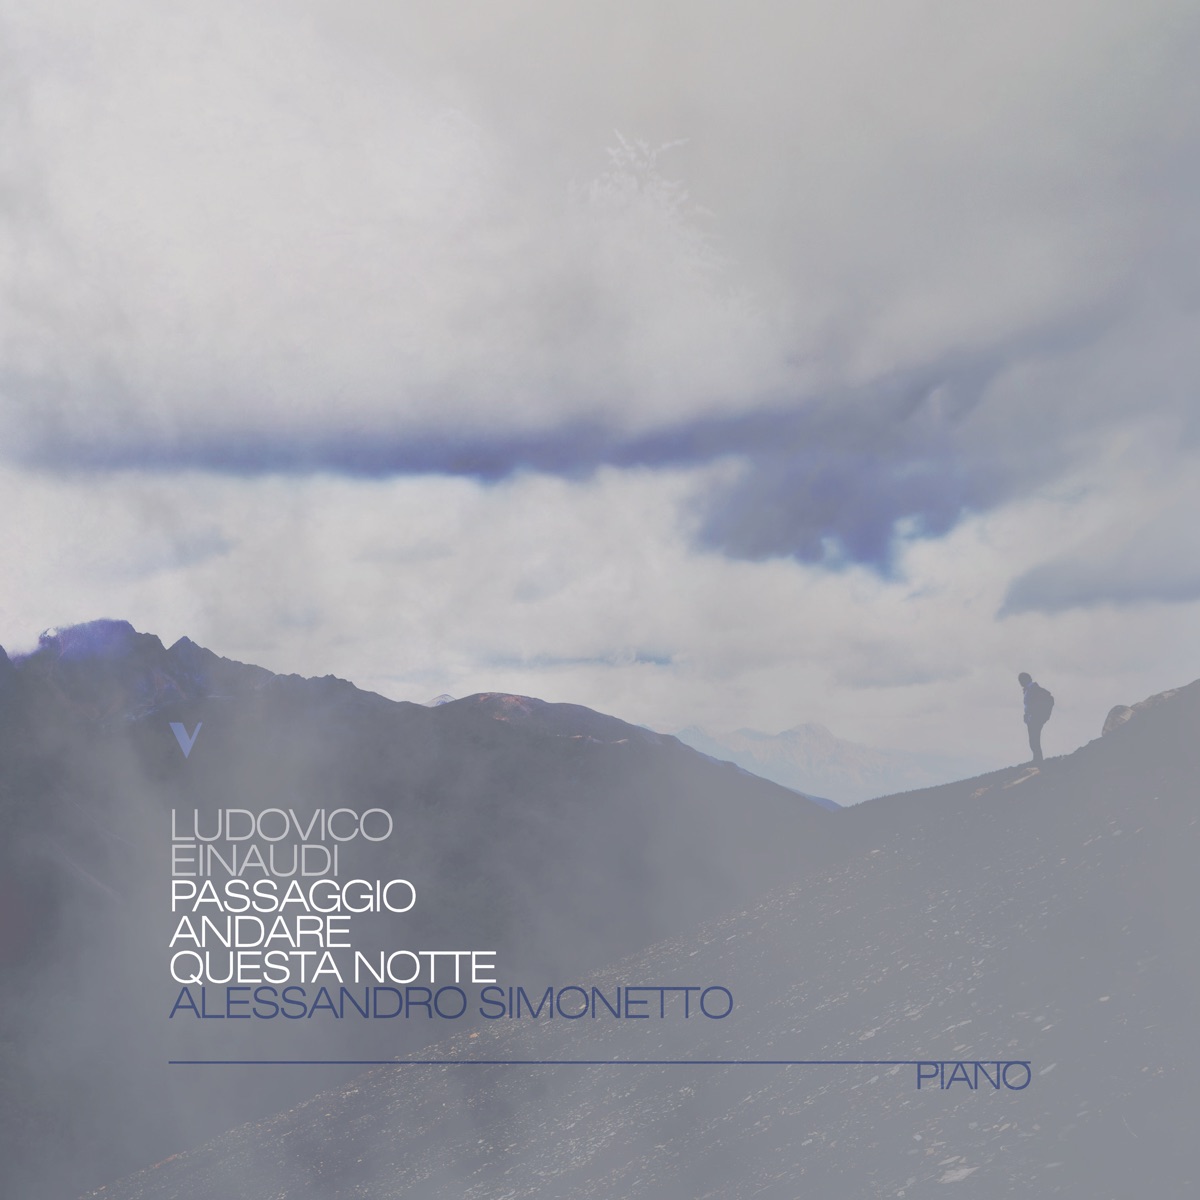 Einaudi: Passaggio, Andare, Questa Notte - Single by Alessandro Simonetto  on Apple Music